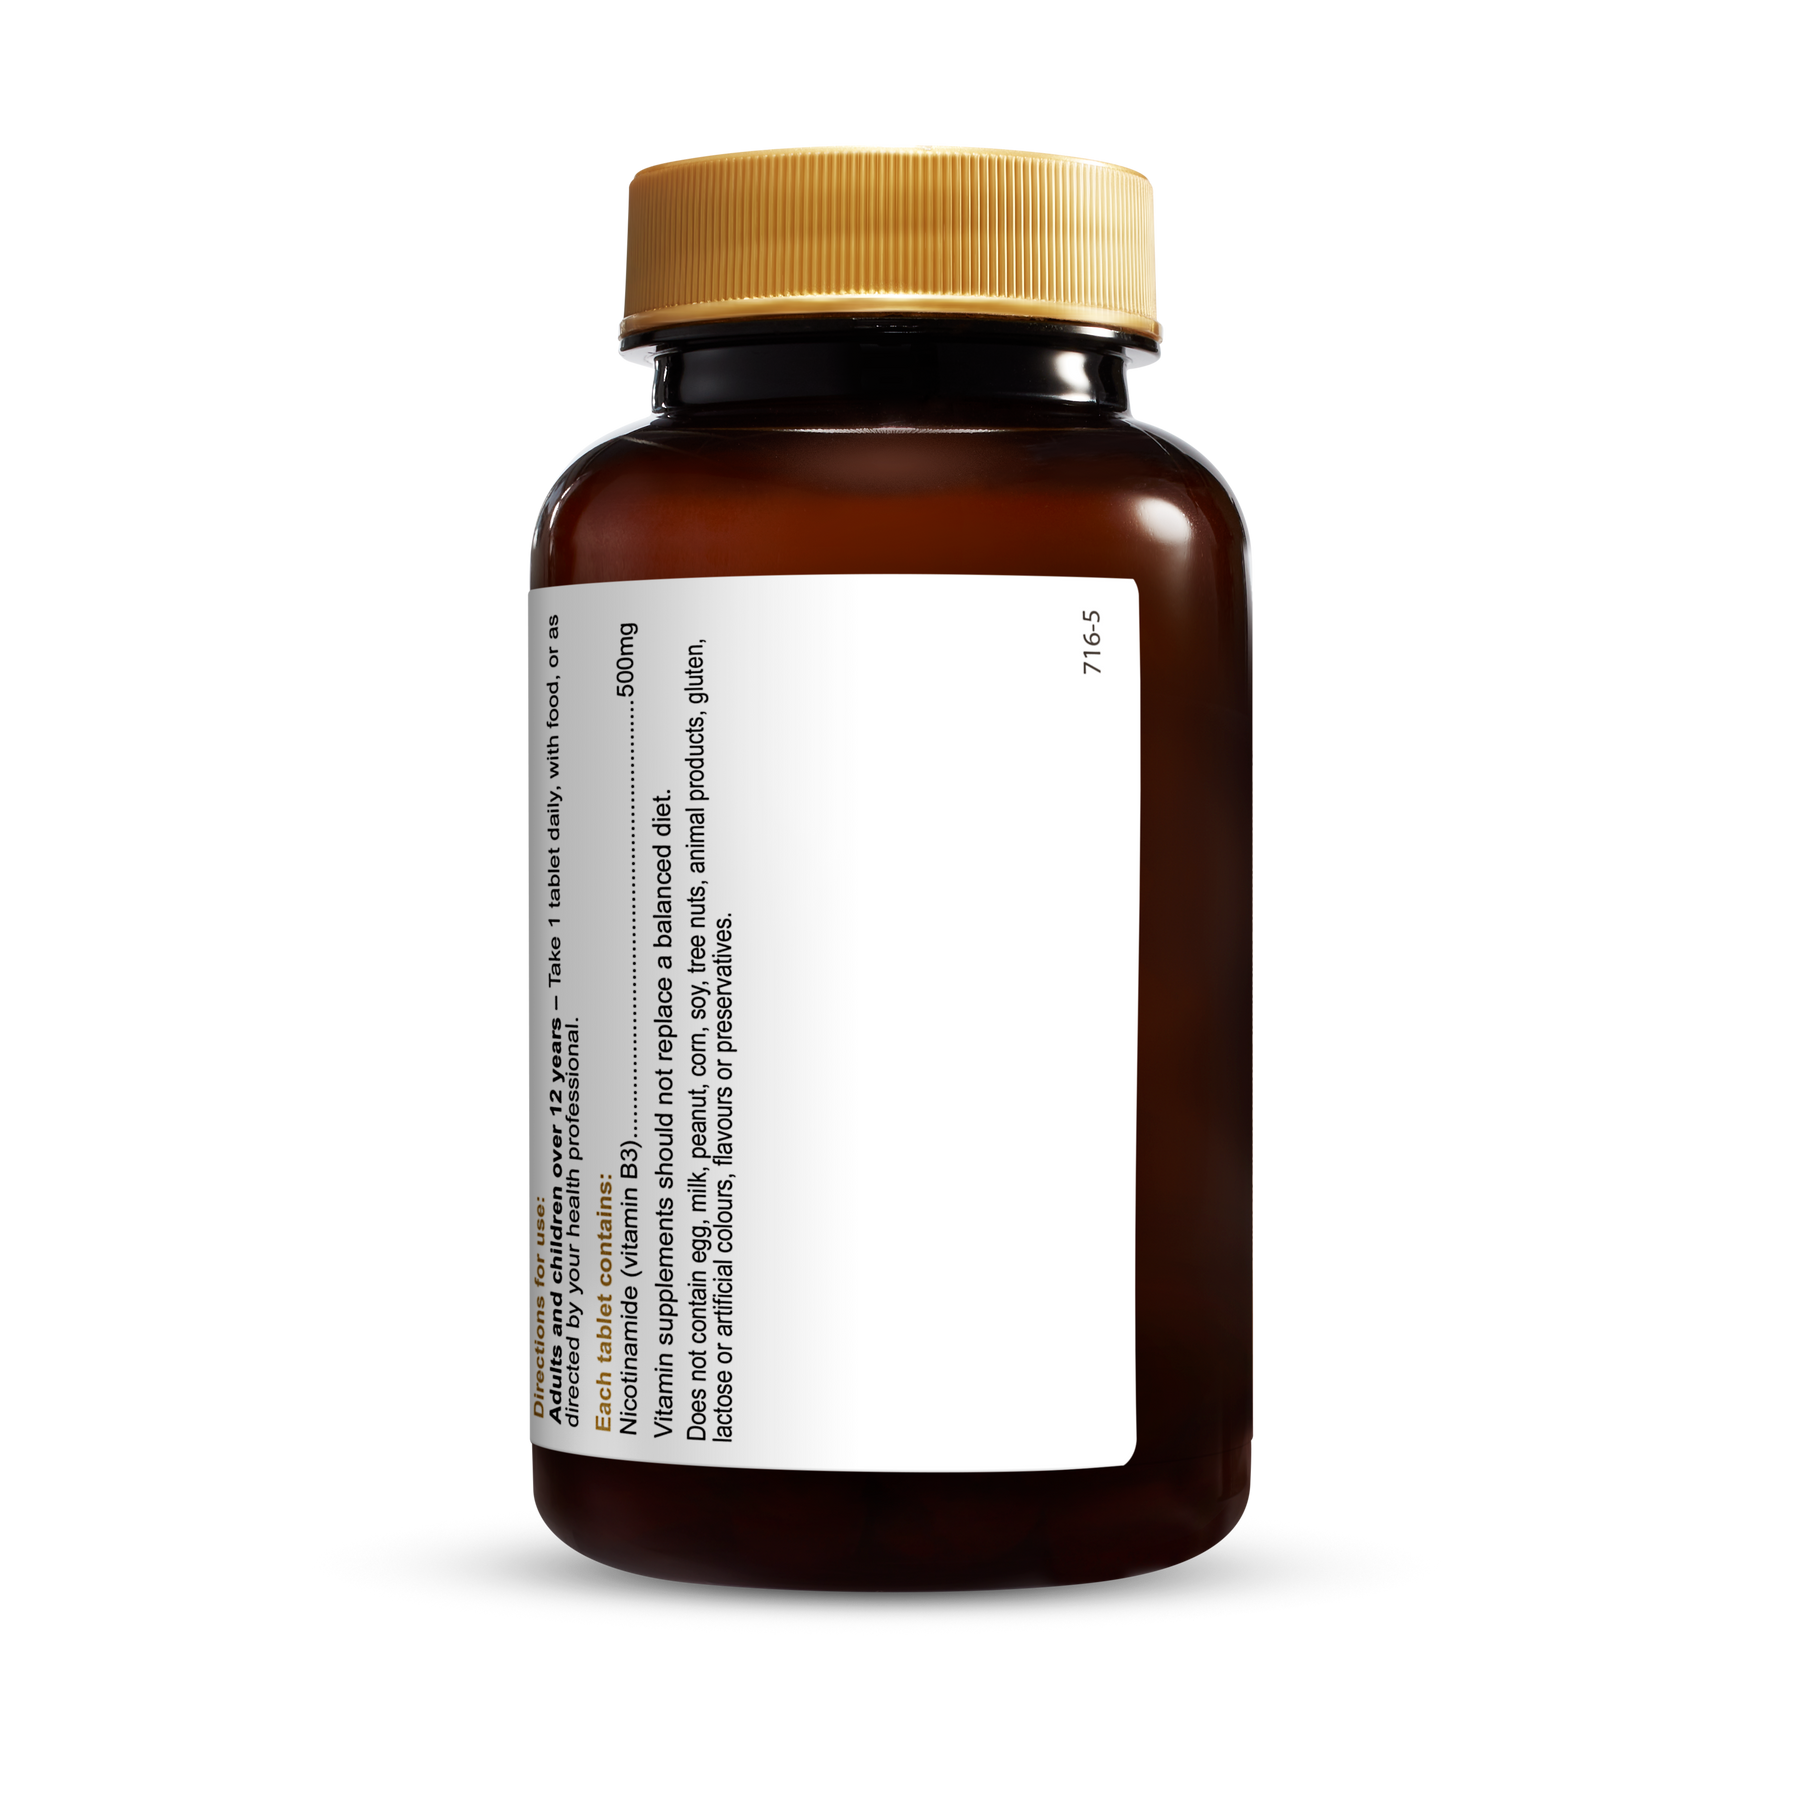 Vitamin B3 500mg